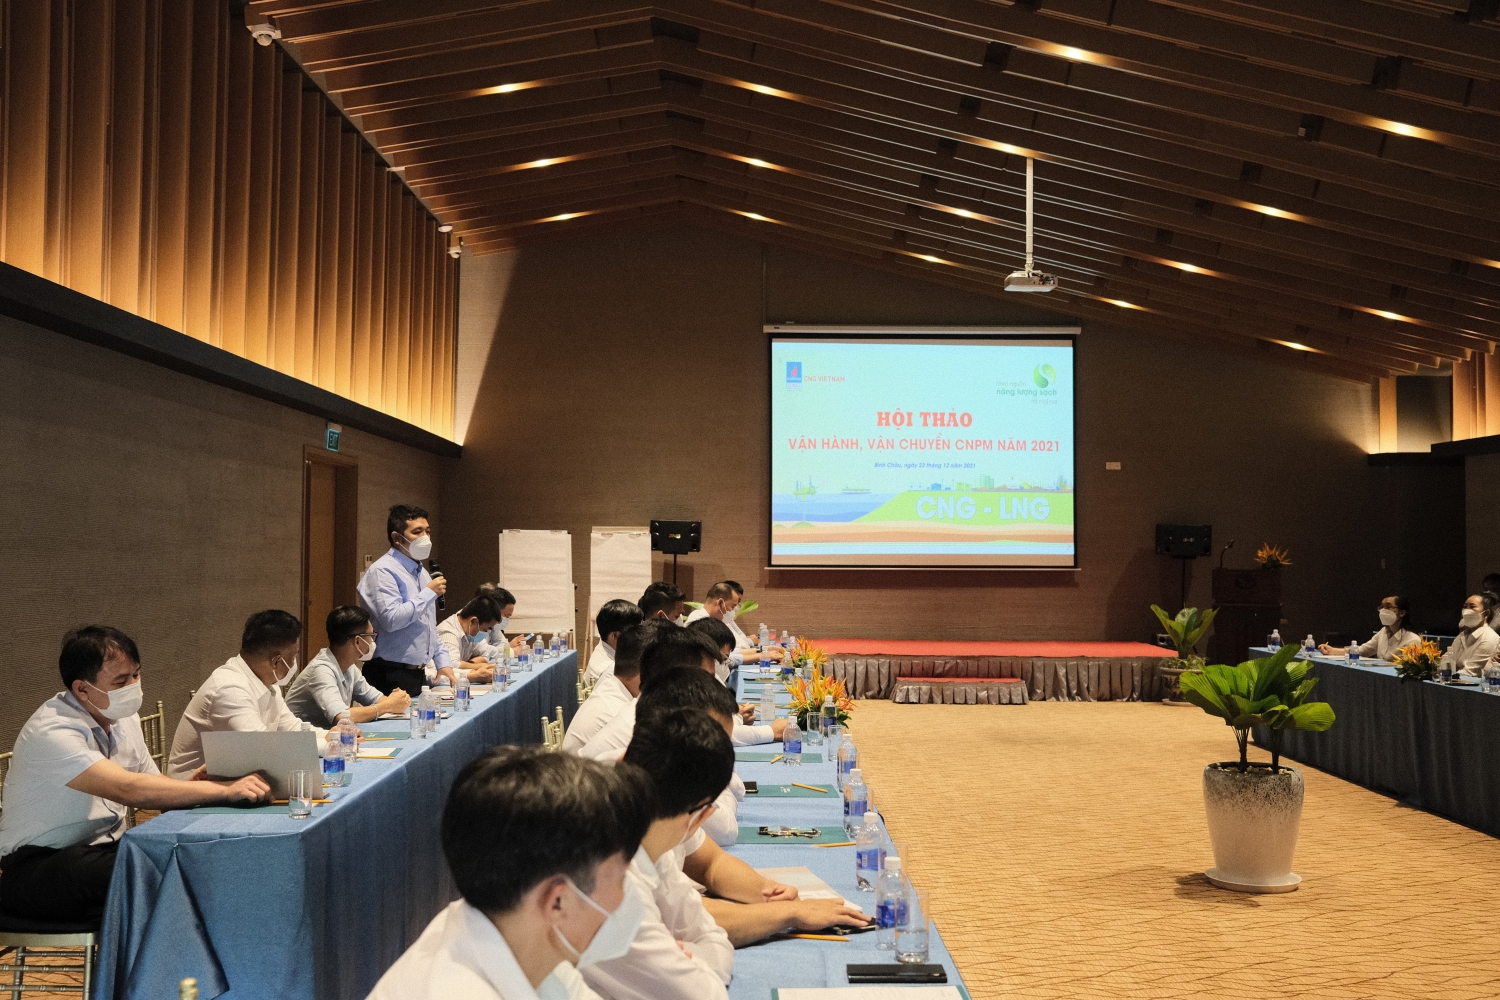 CNG Vietnam – Chi nhánh Phú Mỹ tổ chức Hội nghị Vận hành, Vận chuyển năm 2021